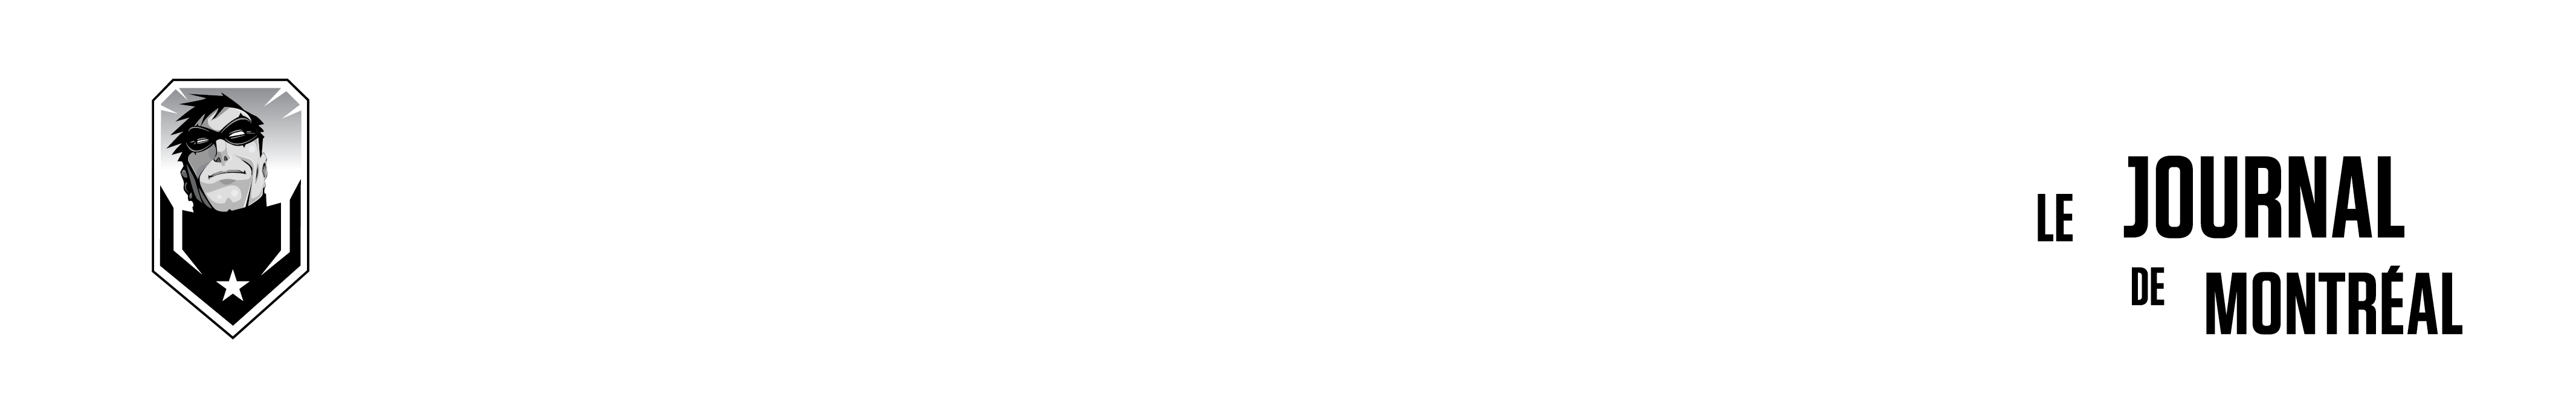 Jeux de société / essai gratuit - Comiccon de Montréal